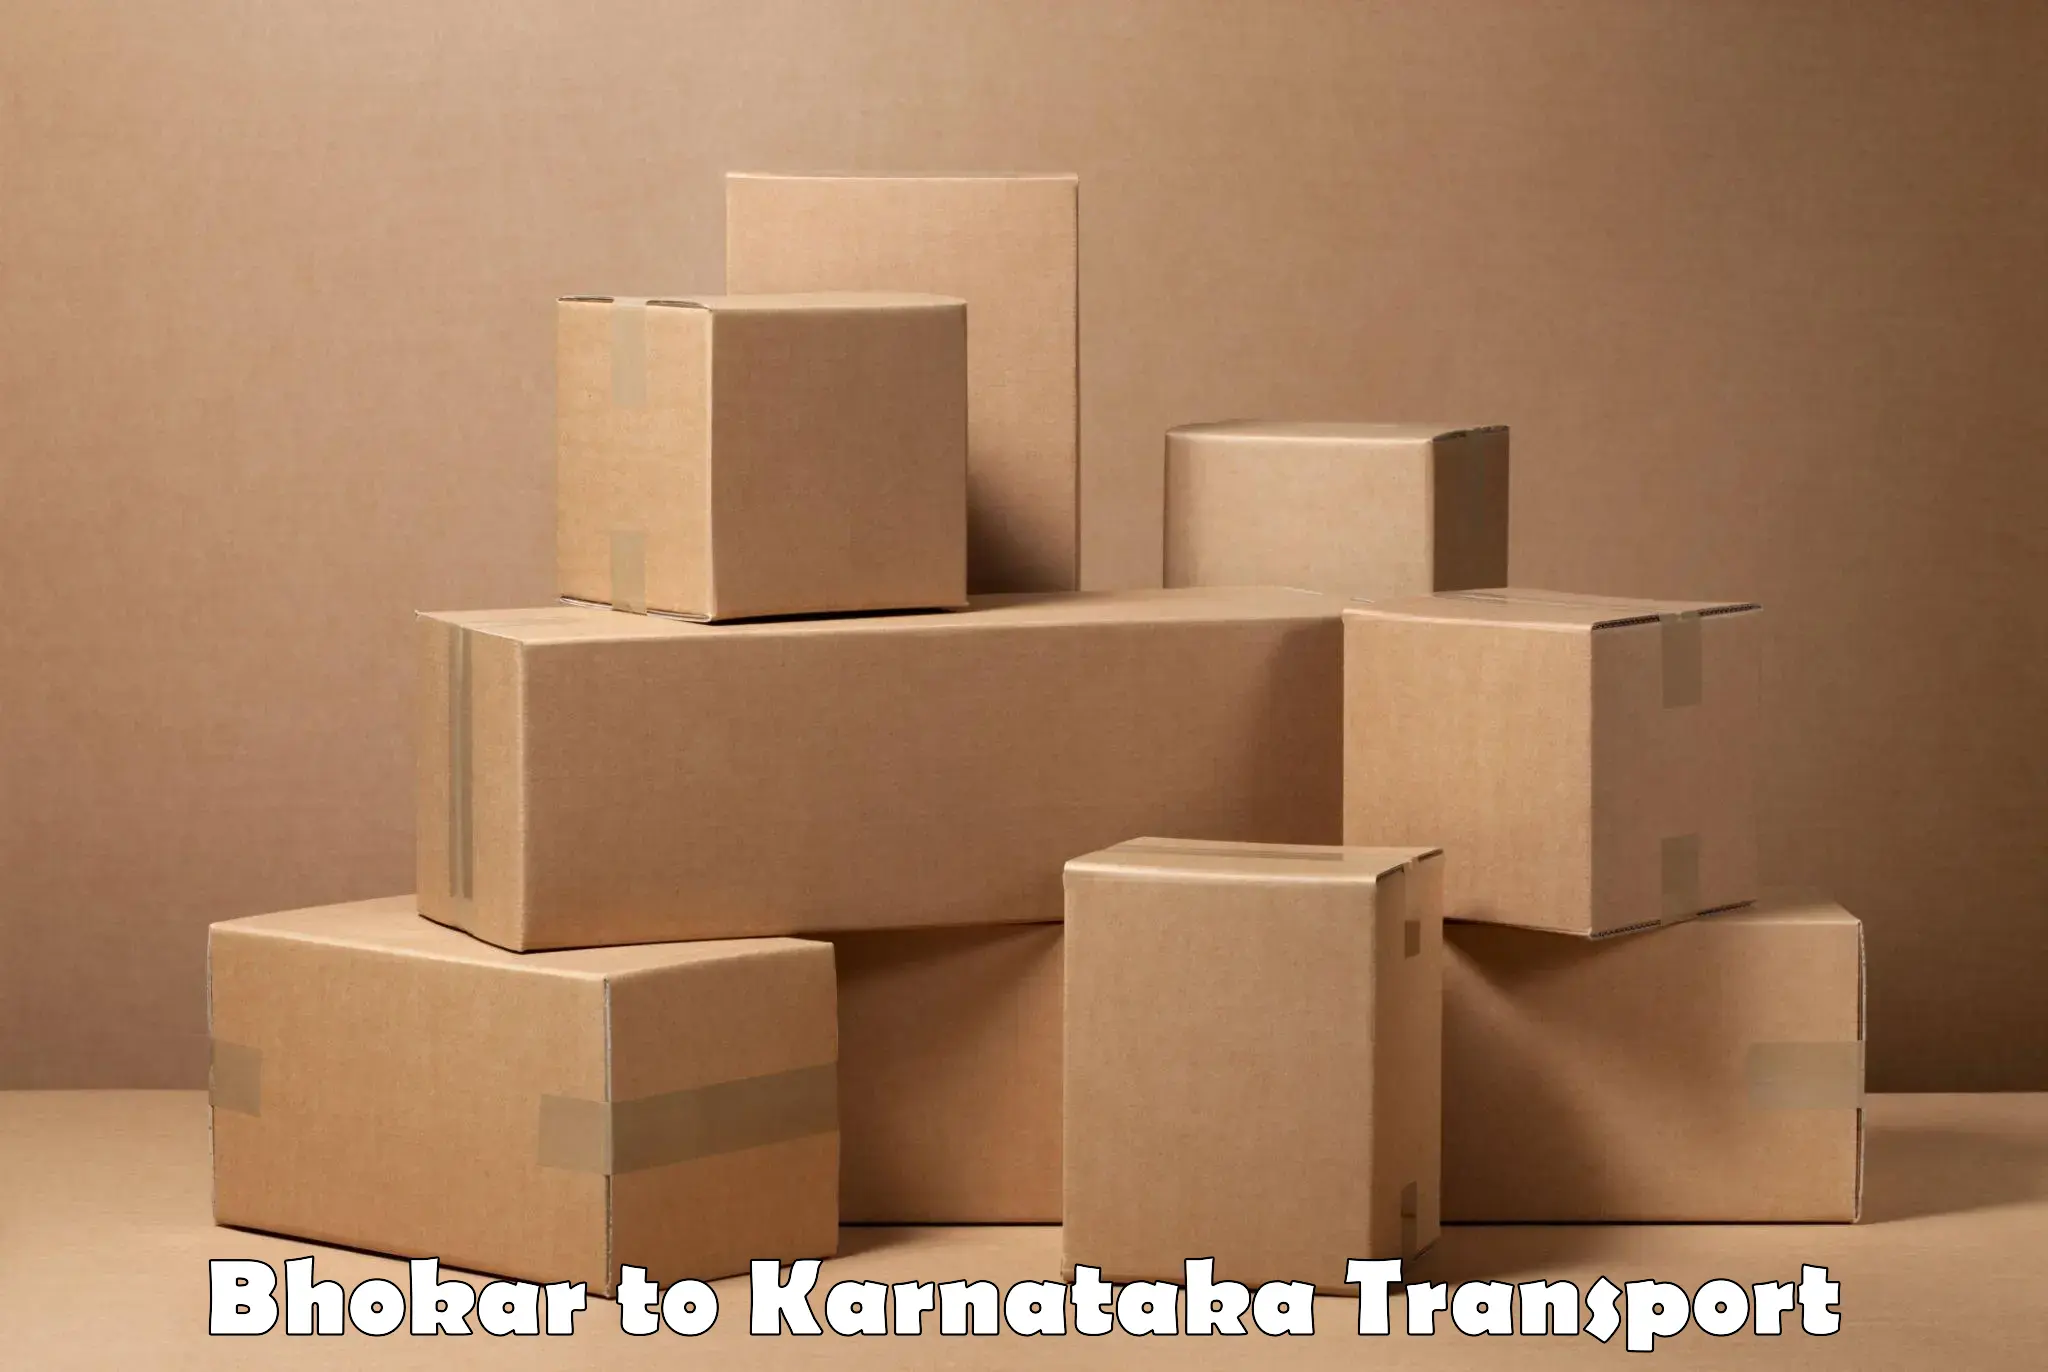 Furniture transport service Bhokar to Kanjarakatte